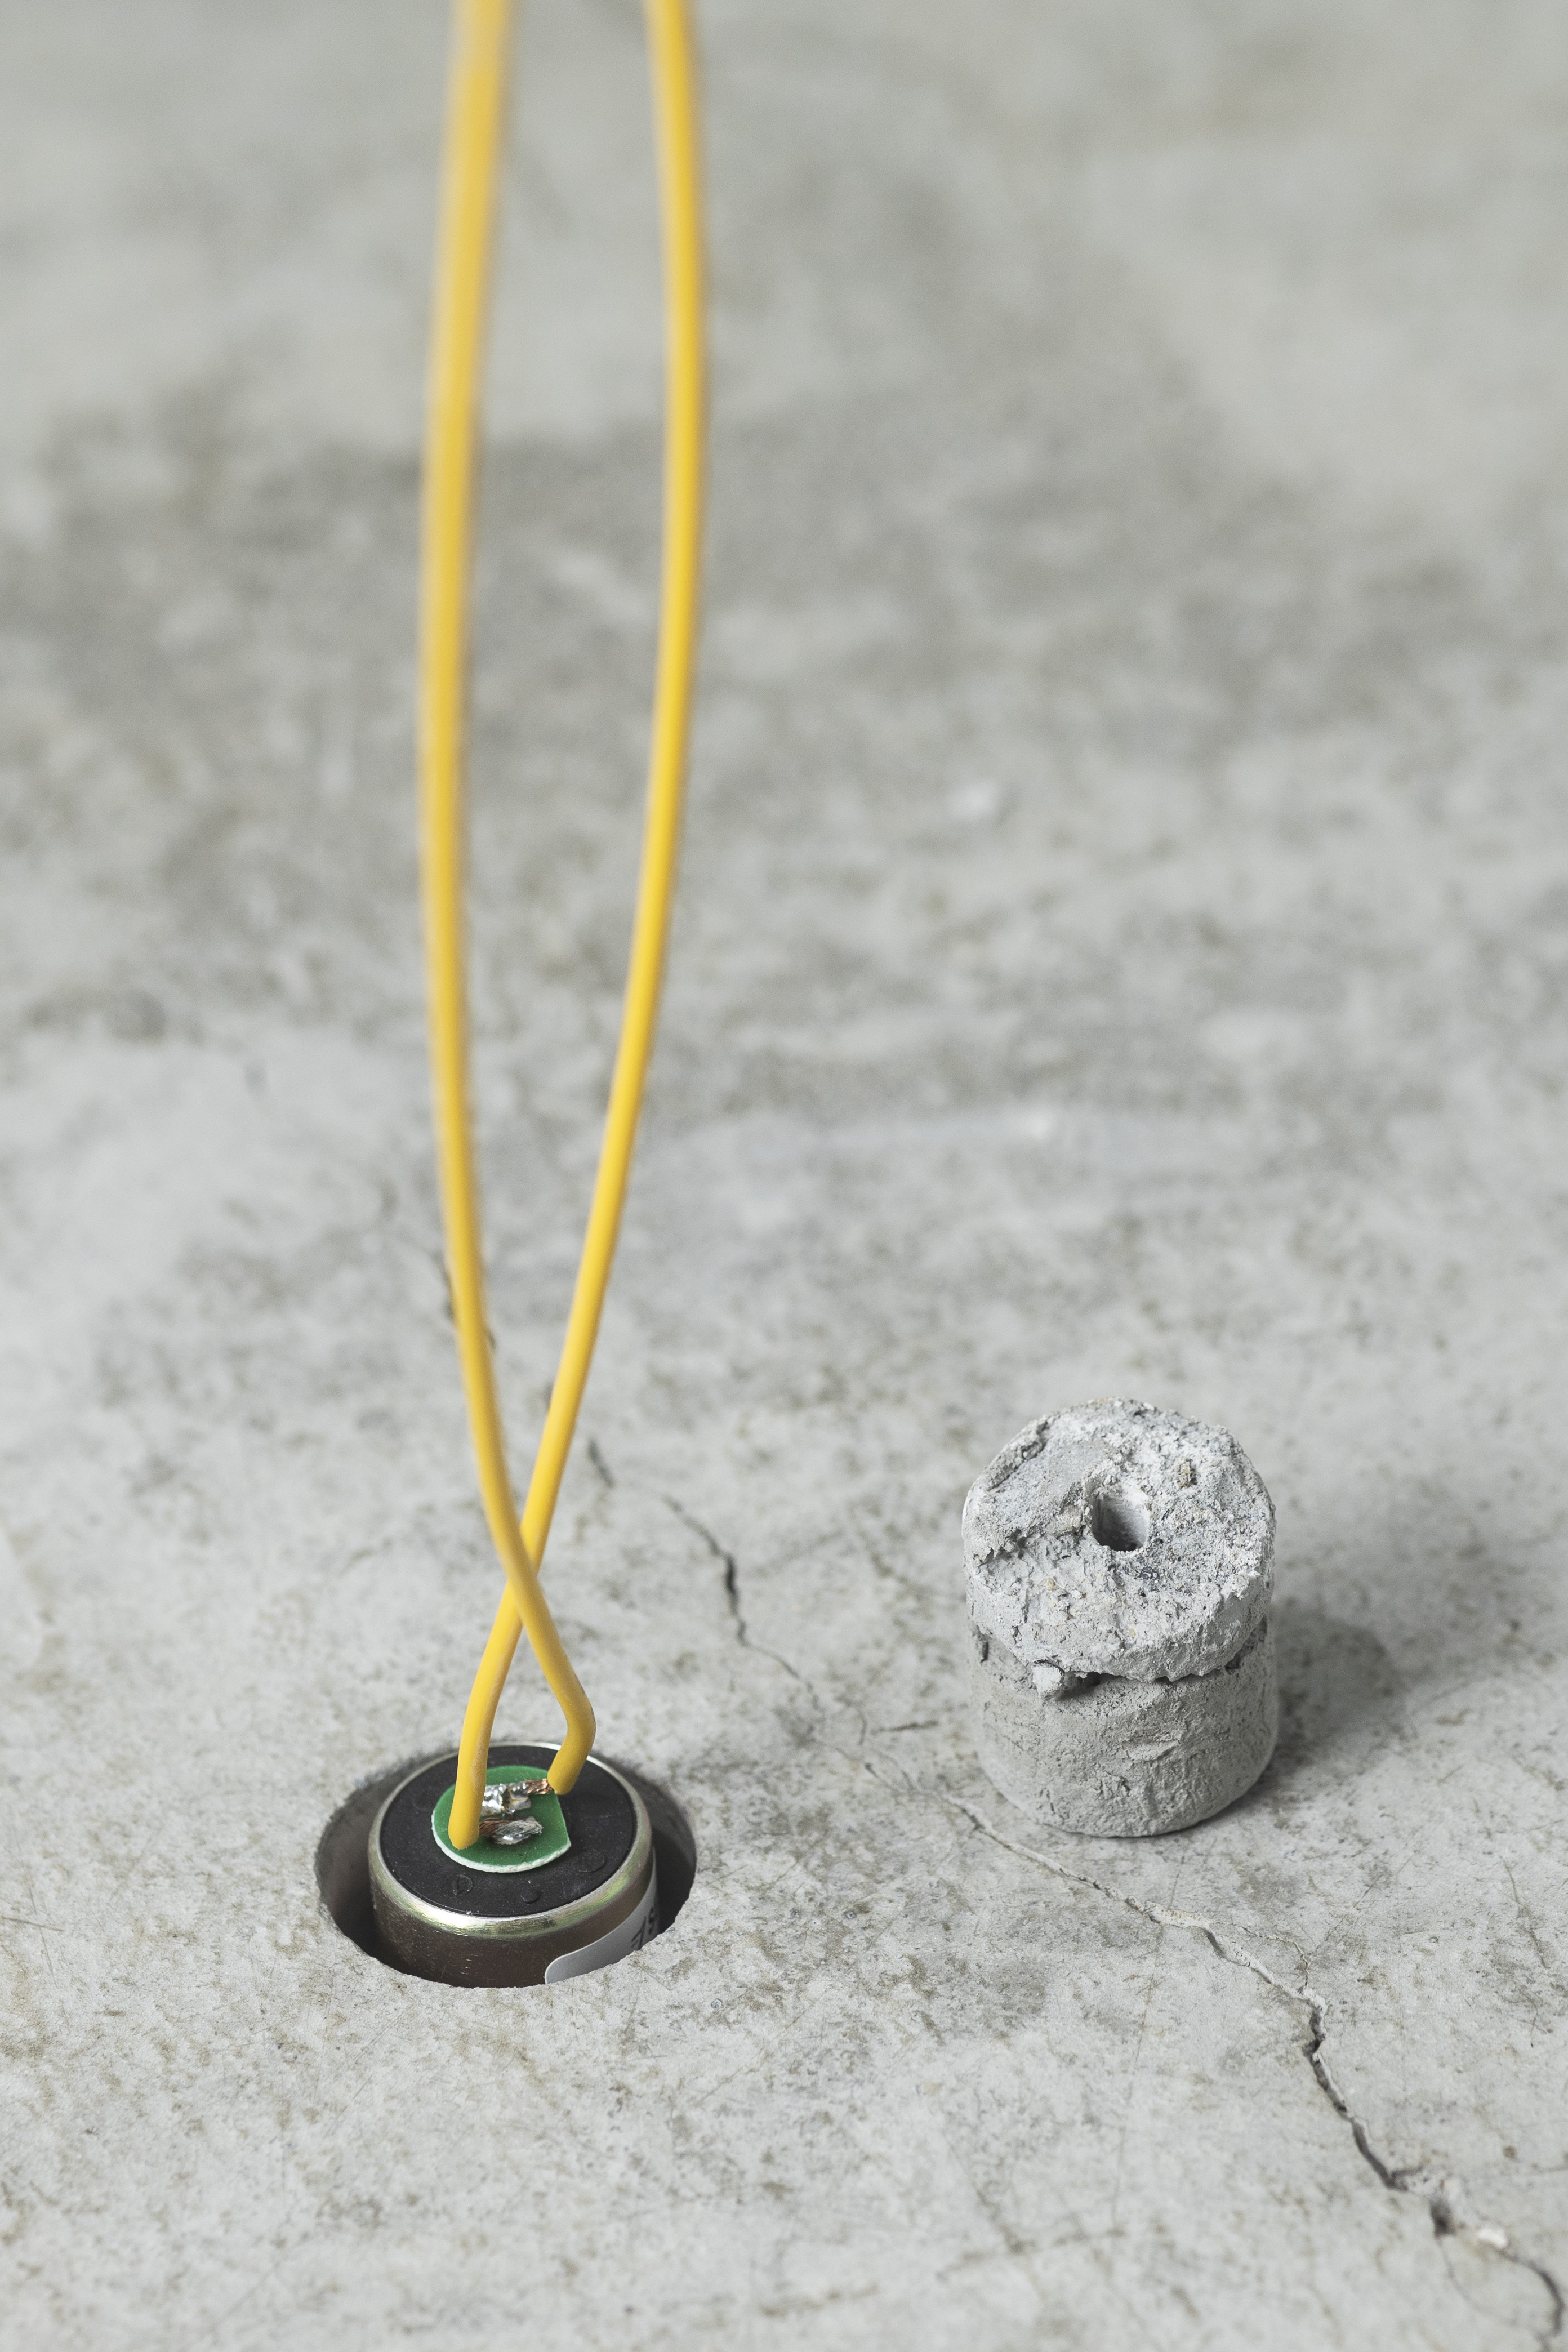 twee gele stroomkabeltjes zijn aangesloten op een batterij die in een gaatje in een stuk beton steekt. Een rond stukje beton (uit het gat) staat los ernaast.